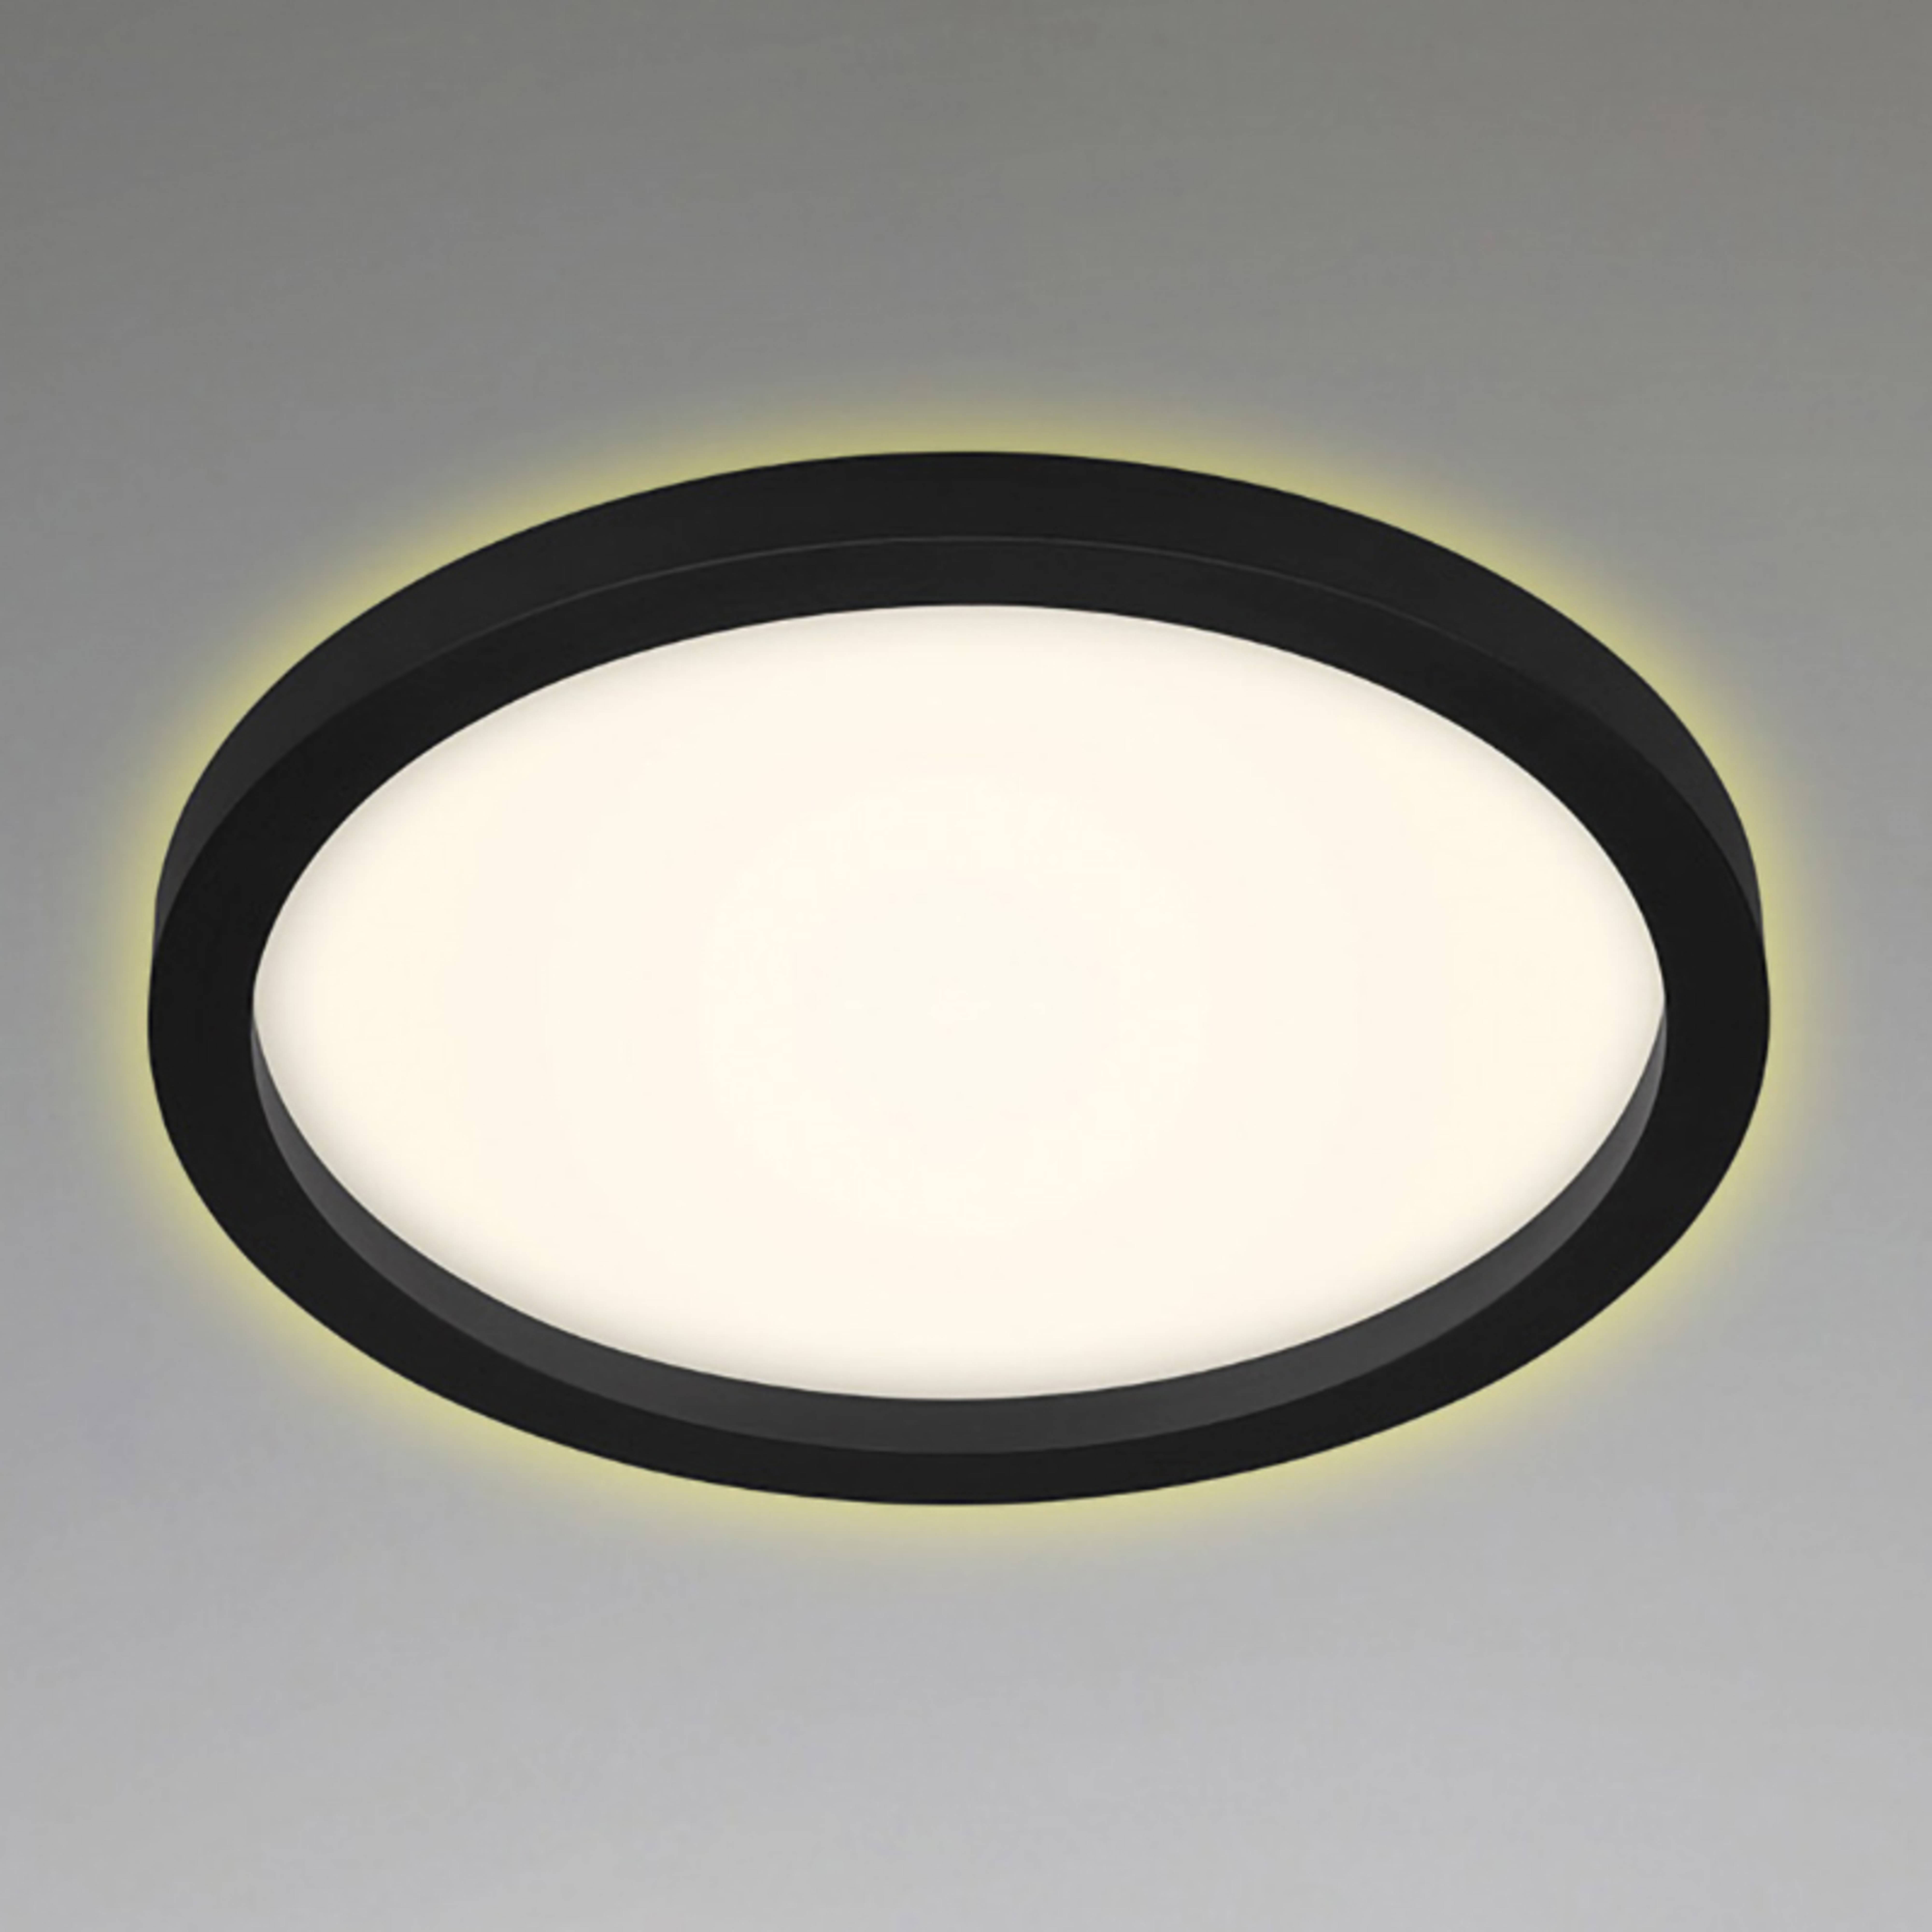 LED-Deckenlampe 7361, Ø 29 cm, schwarz